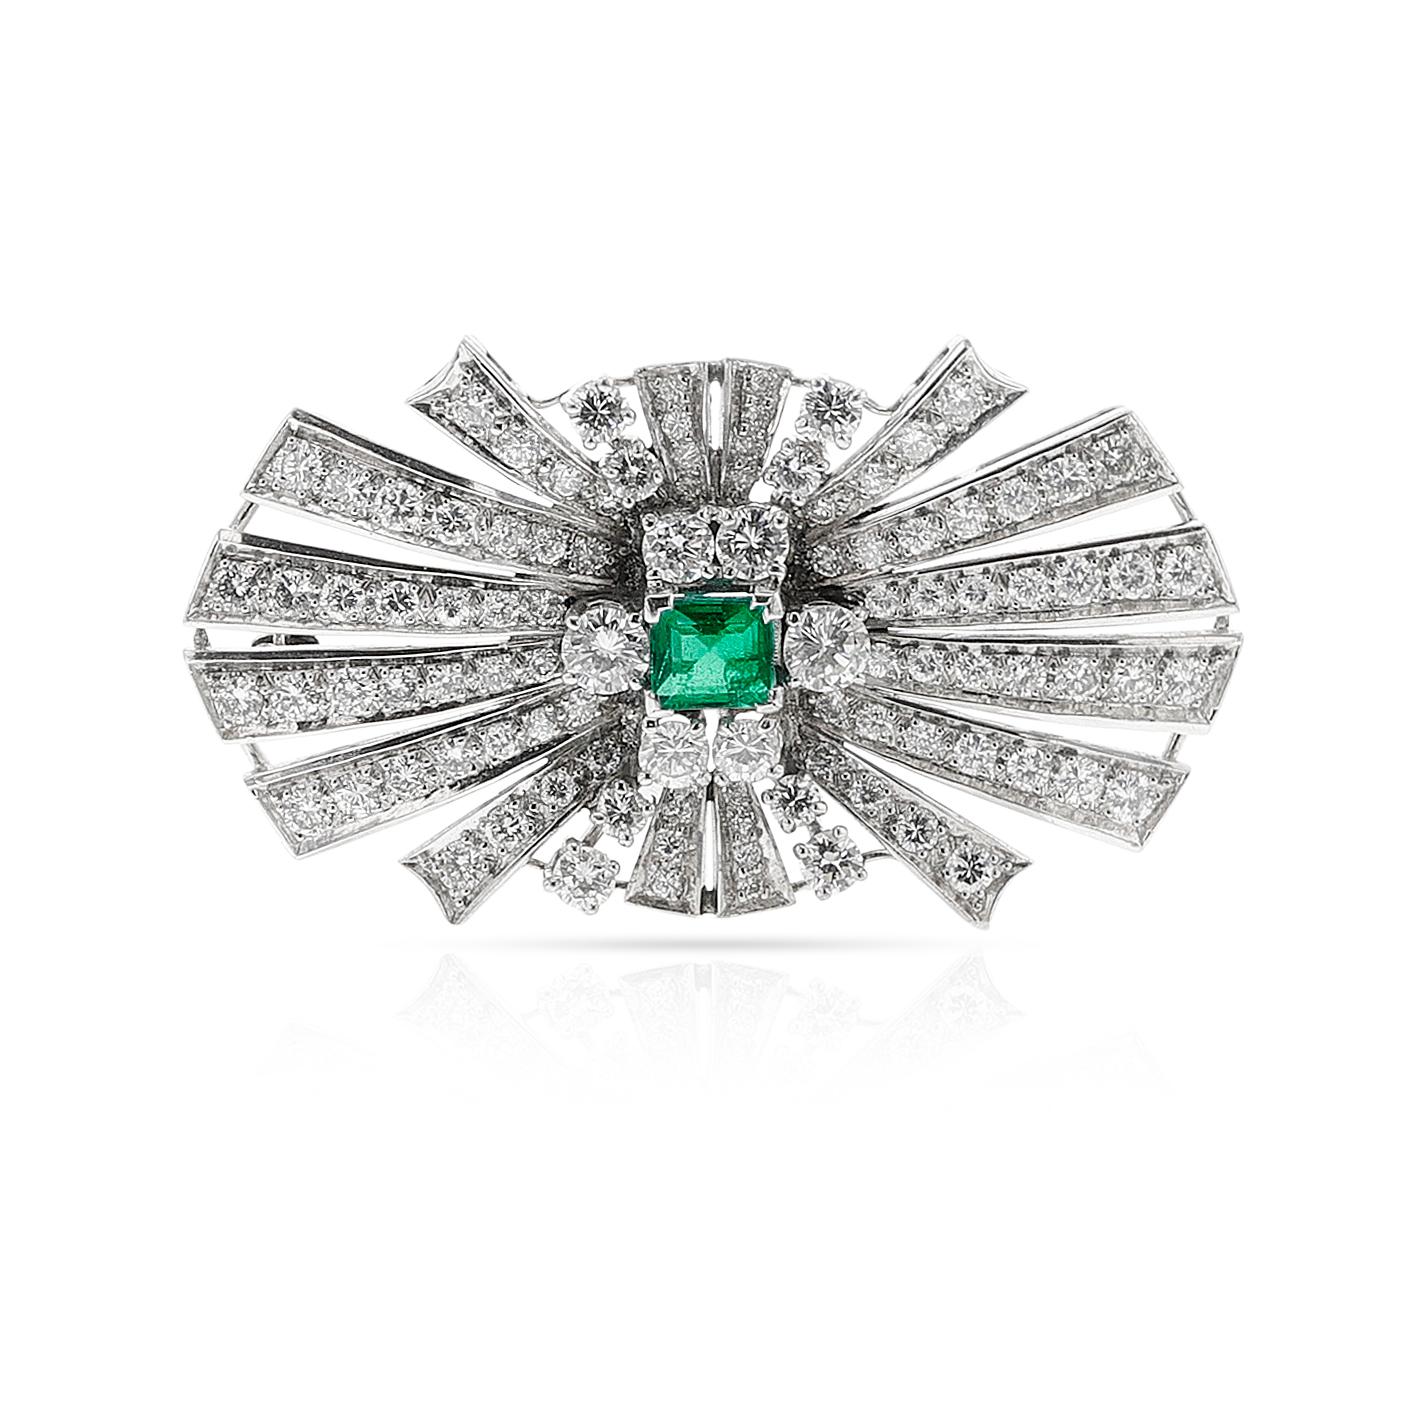 Eine Smaragd- und Diamant-Brosche aus Platin. Besetzt mit einem quadratischen Smaragd von ca. 0,60 Karat und runden Diamanten von ca. 4 Karat. Die Länge beträgt 1 3/4 Zoll. Die Brosche ist aus Platin gefertigt. Die Farbe der Diamanten wird auf H-I